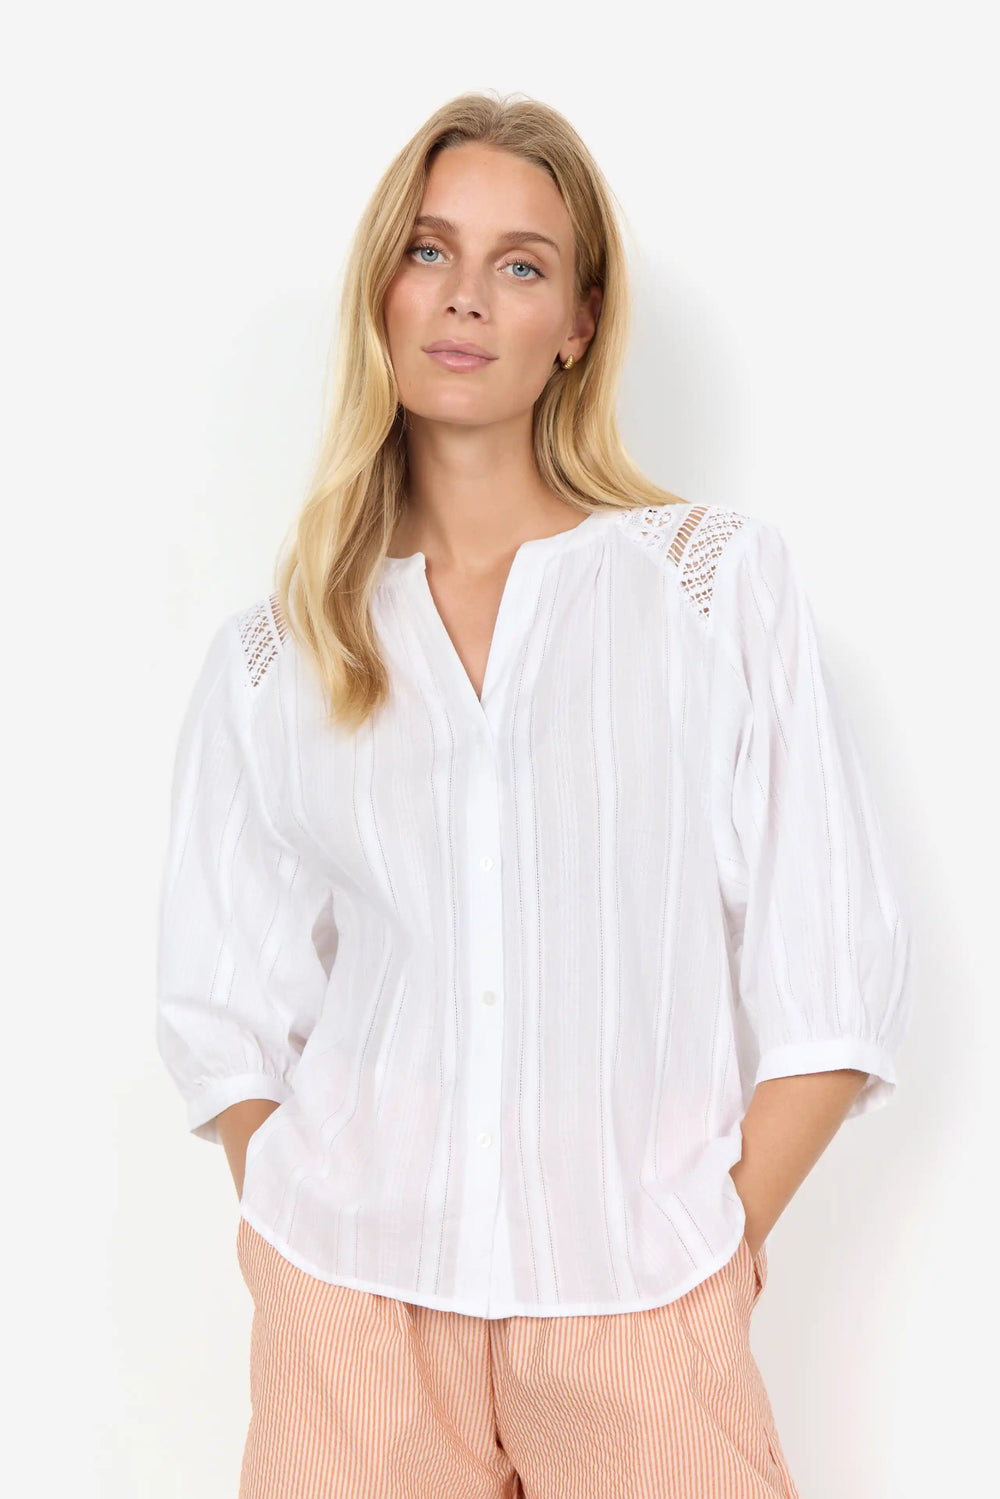 Sc-Edona 1 White | Skjorter og bluser | Smuk - Dameklær på nett